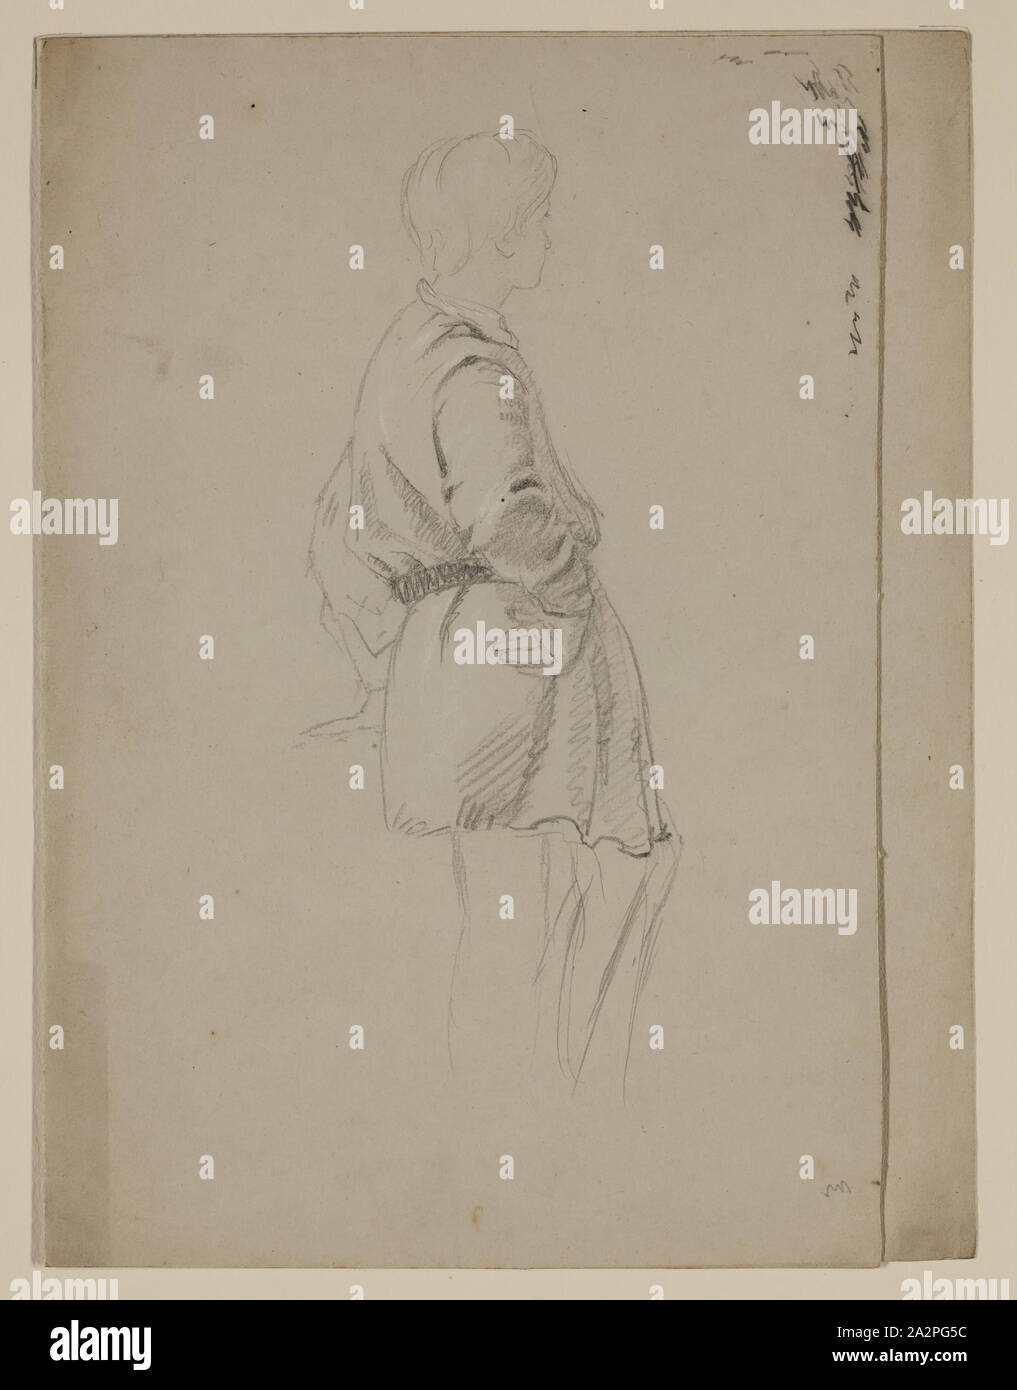 Thomas Cole, Américain, 1801-1848, jeune figure dans un blouson de chasse, entre 1801 et 1848 crayon graphite, rehaussée de craie blanche sur papier vélin gris clair, feuille : 9 3/4 × 7 3/8 pouces (24,8 × 18,7 cm Banque D'Images